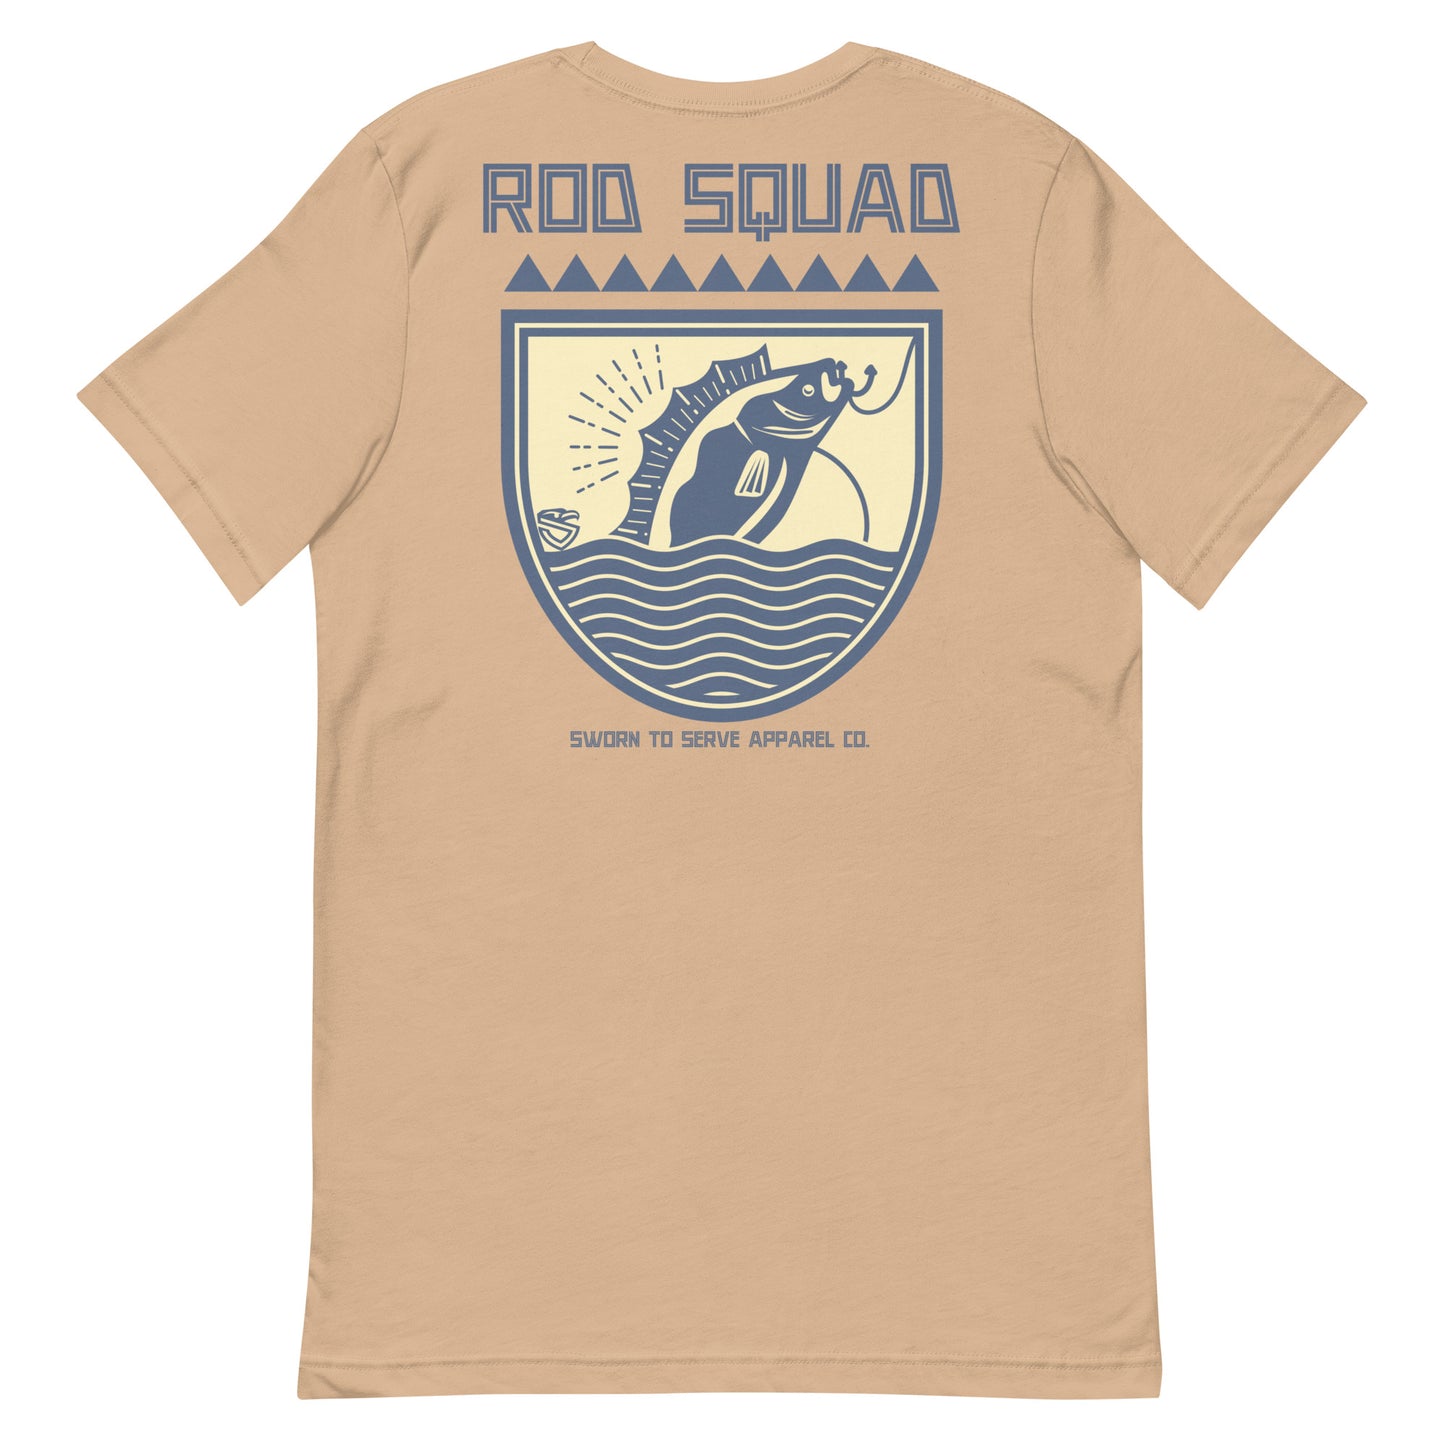 Rod Squad t-shirt